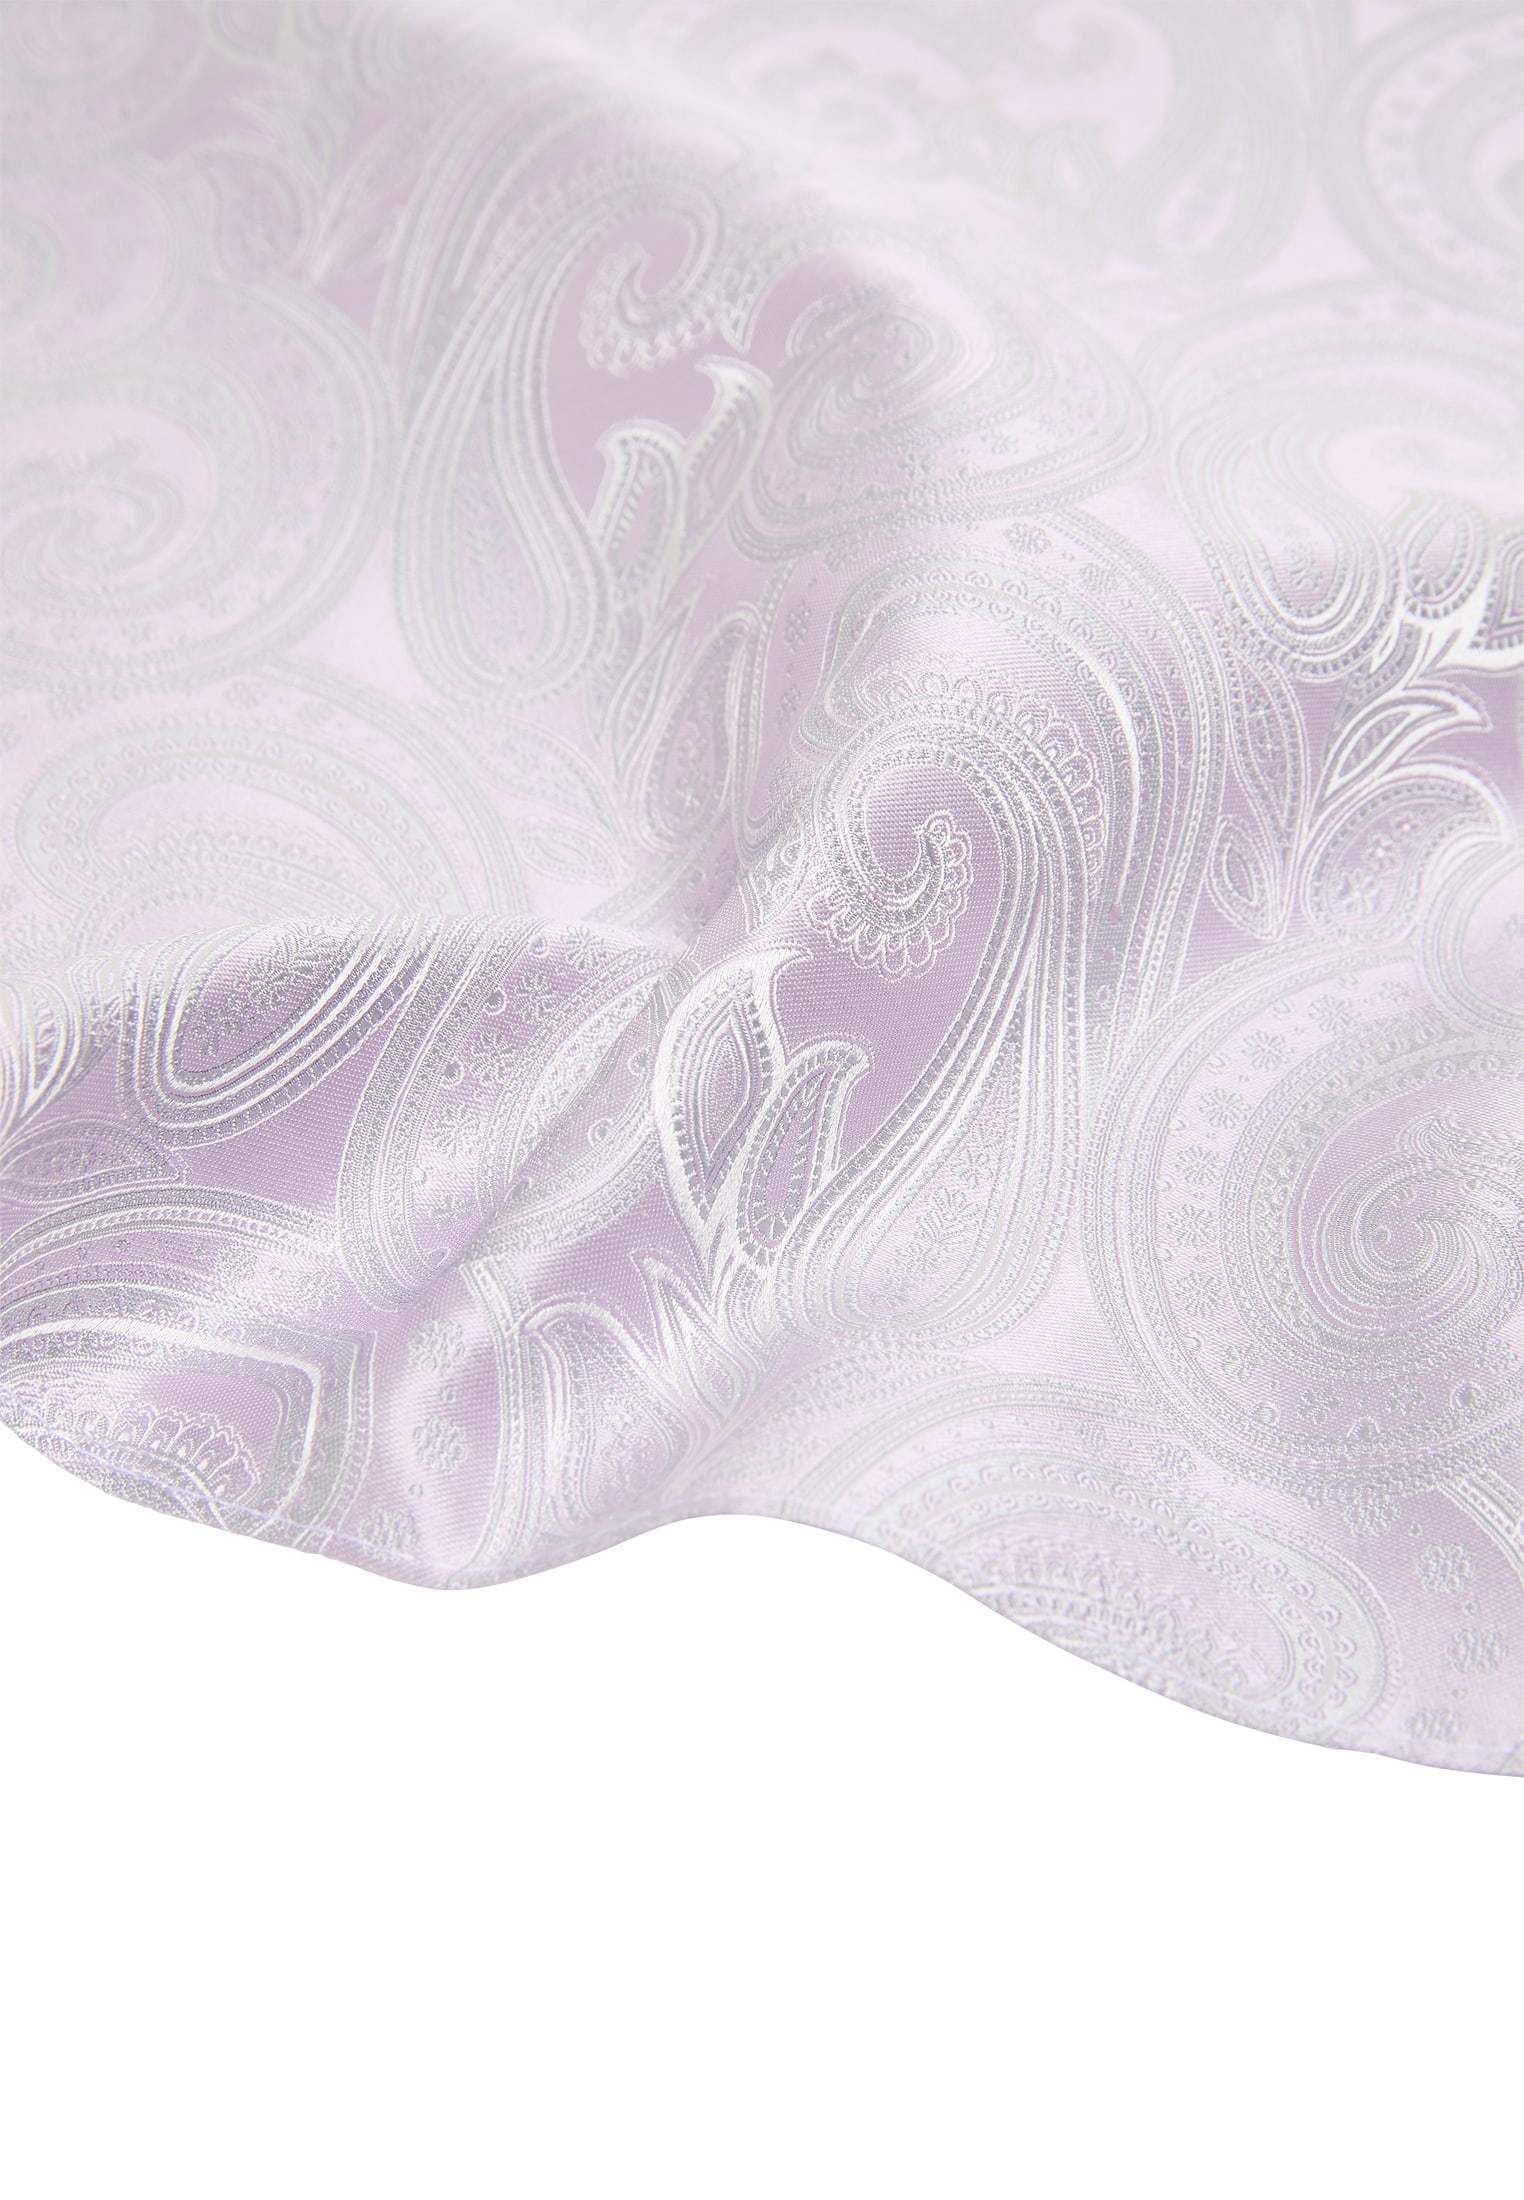 Pocket square in lavender patterned